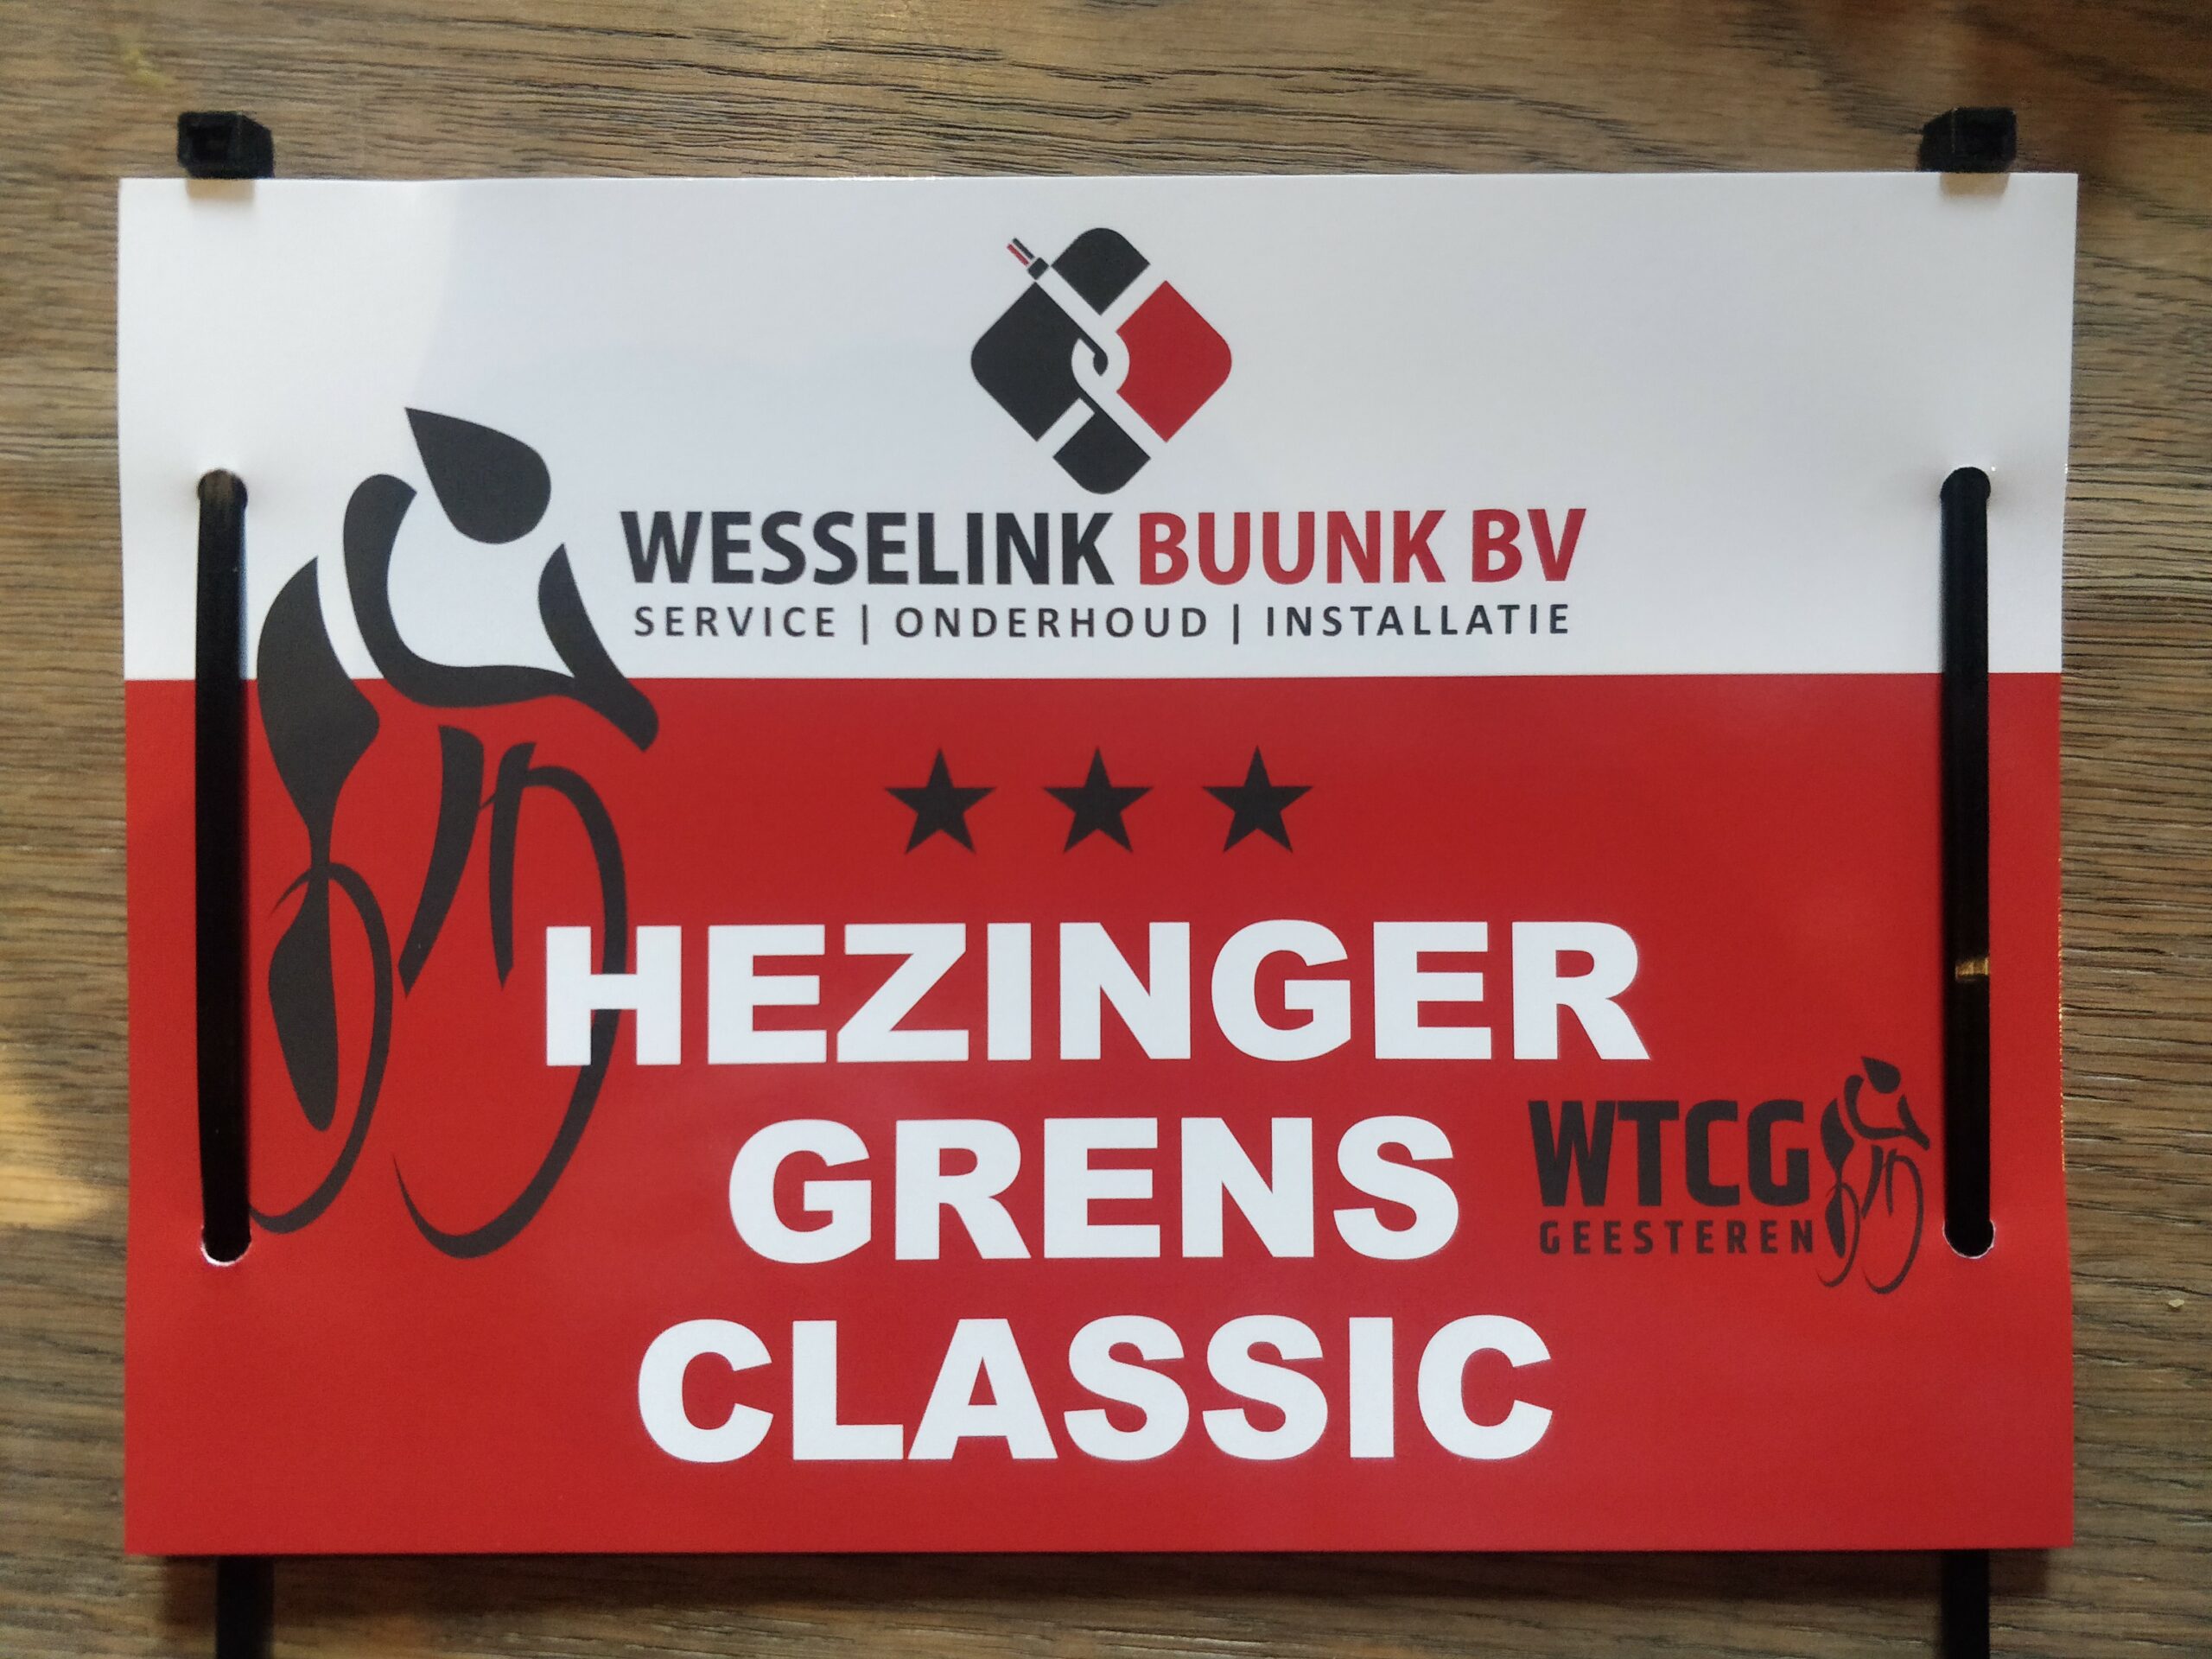 Hezinger Grens Classic - WTCG